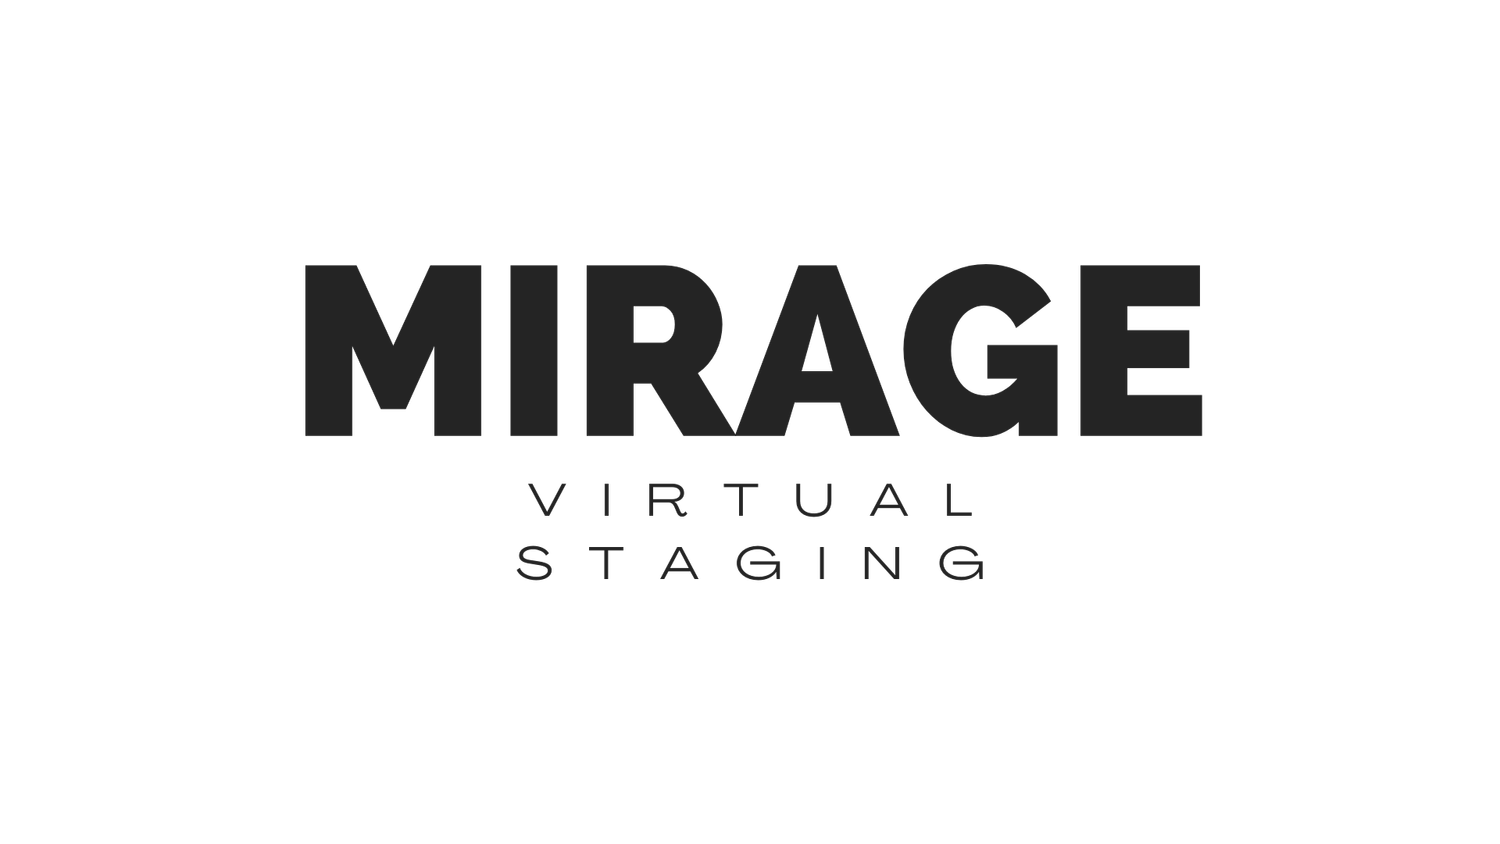 Mirage Virtual Staging